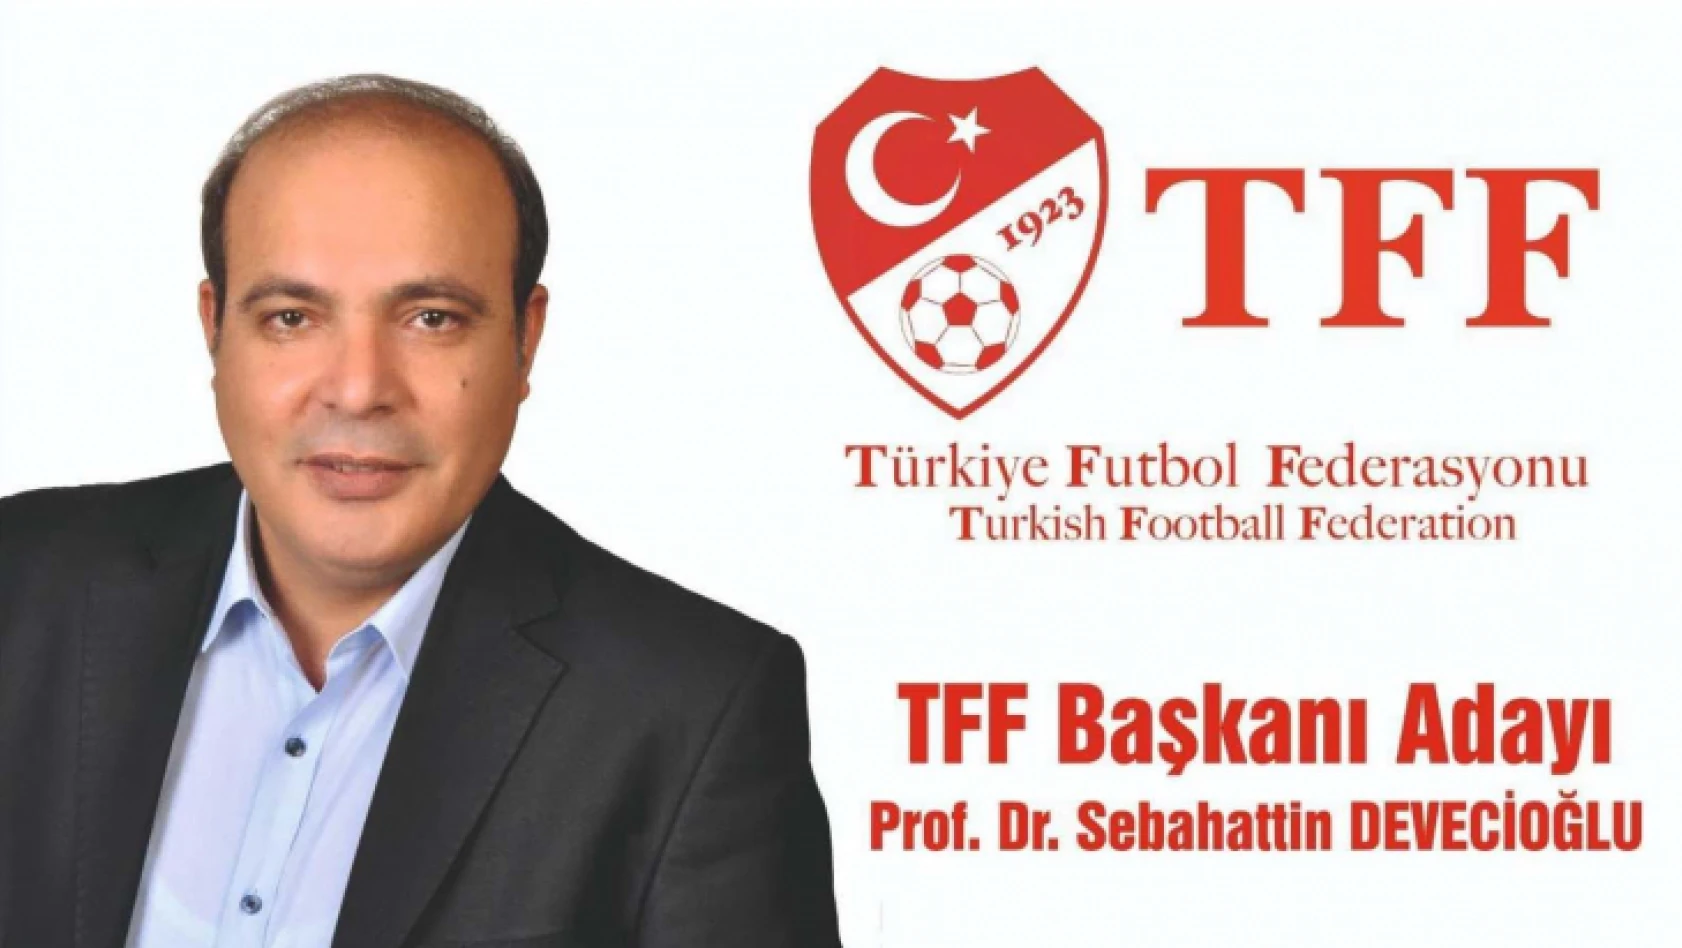 Futbolun profesörü Sebahattin Devecioğlu TFF Başkanlığına aday